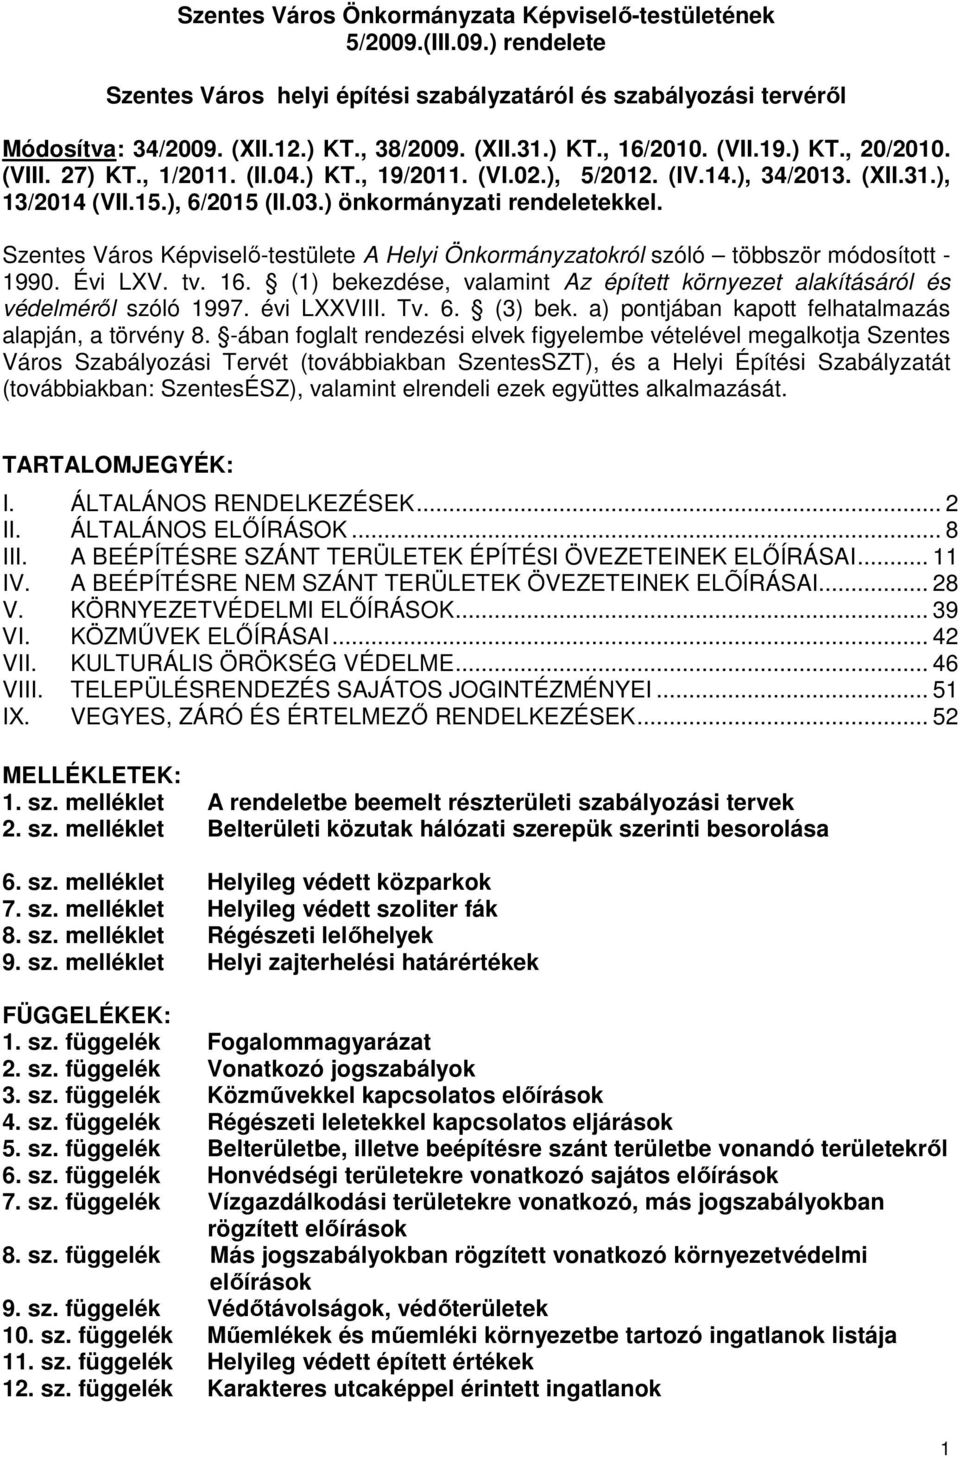 Szentes Város Képviselő-testülete A Helyi Önkormányzatokról szóló többször módosított - 1990. Évi LXV. tv. 16. (1) bekezdése, valamint Az épített környezet alakításáról és védelméről szóló 1997.